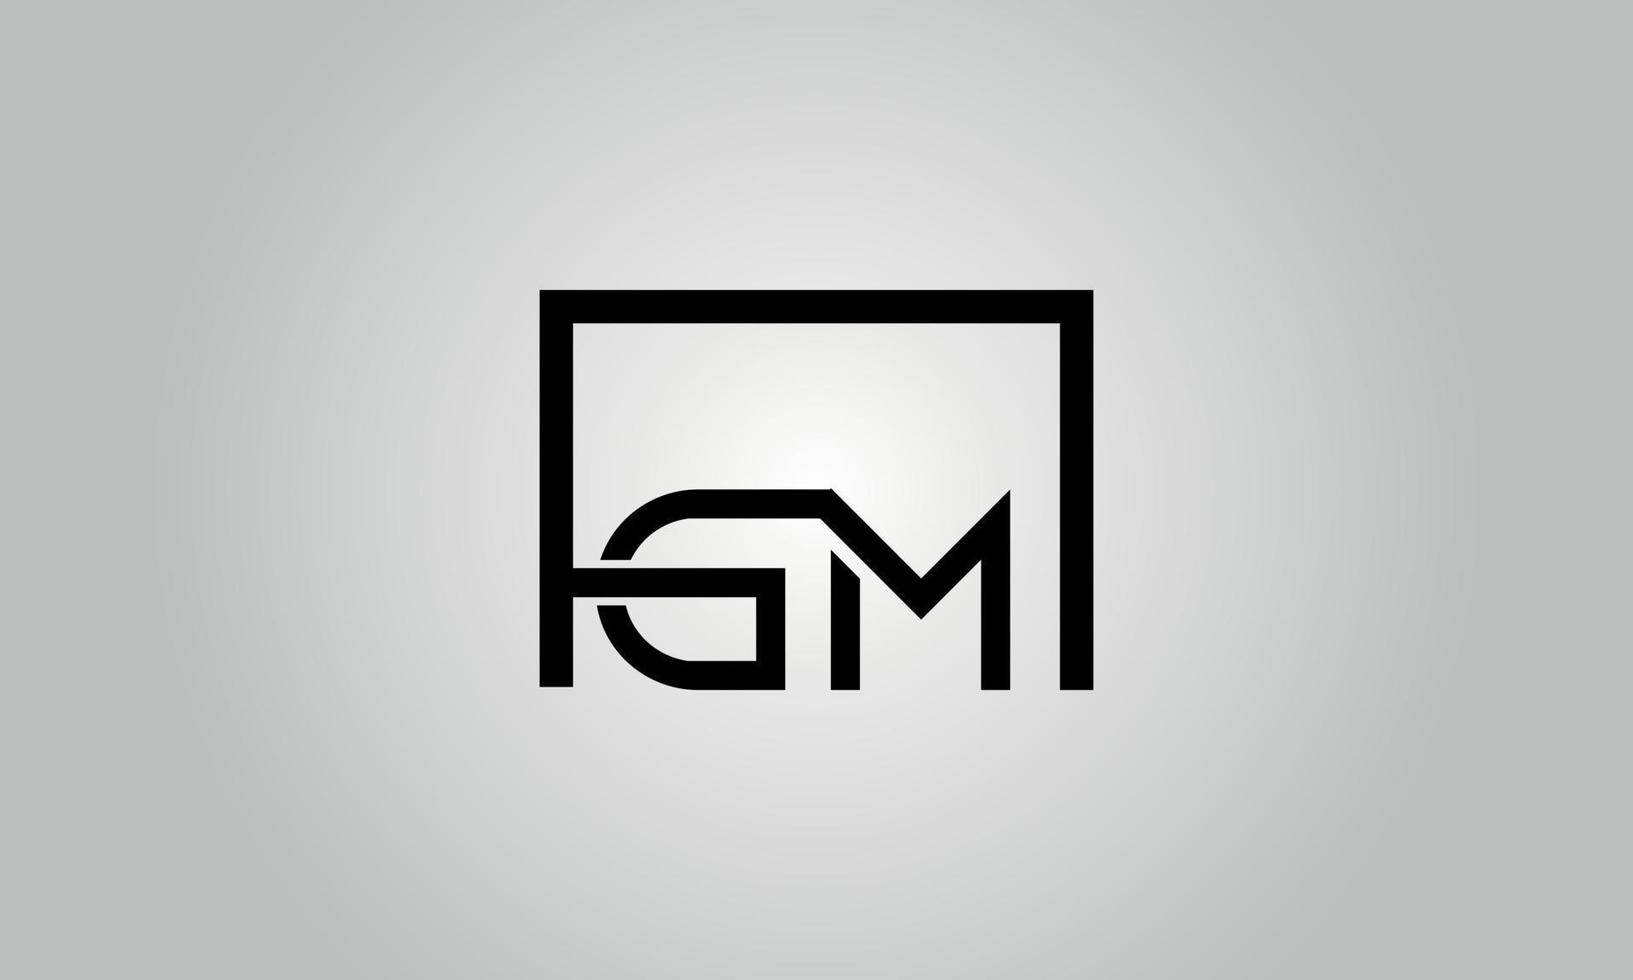 création de logo lettre gm. logo gm avec forme carrée dans le modèle vectoriel gratuit de couleurs noires.